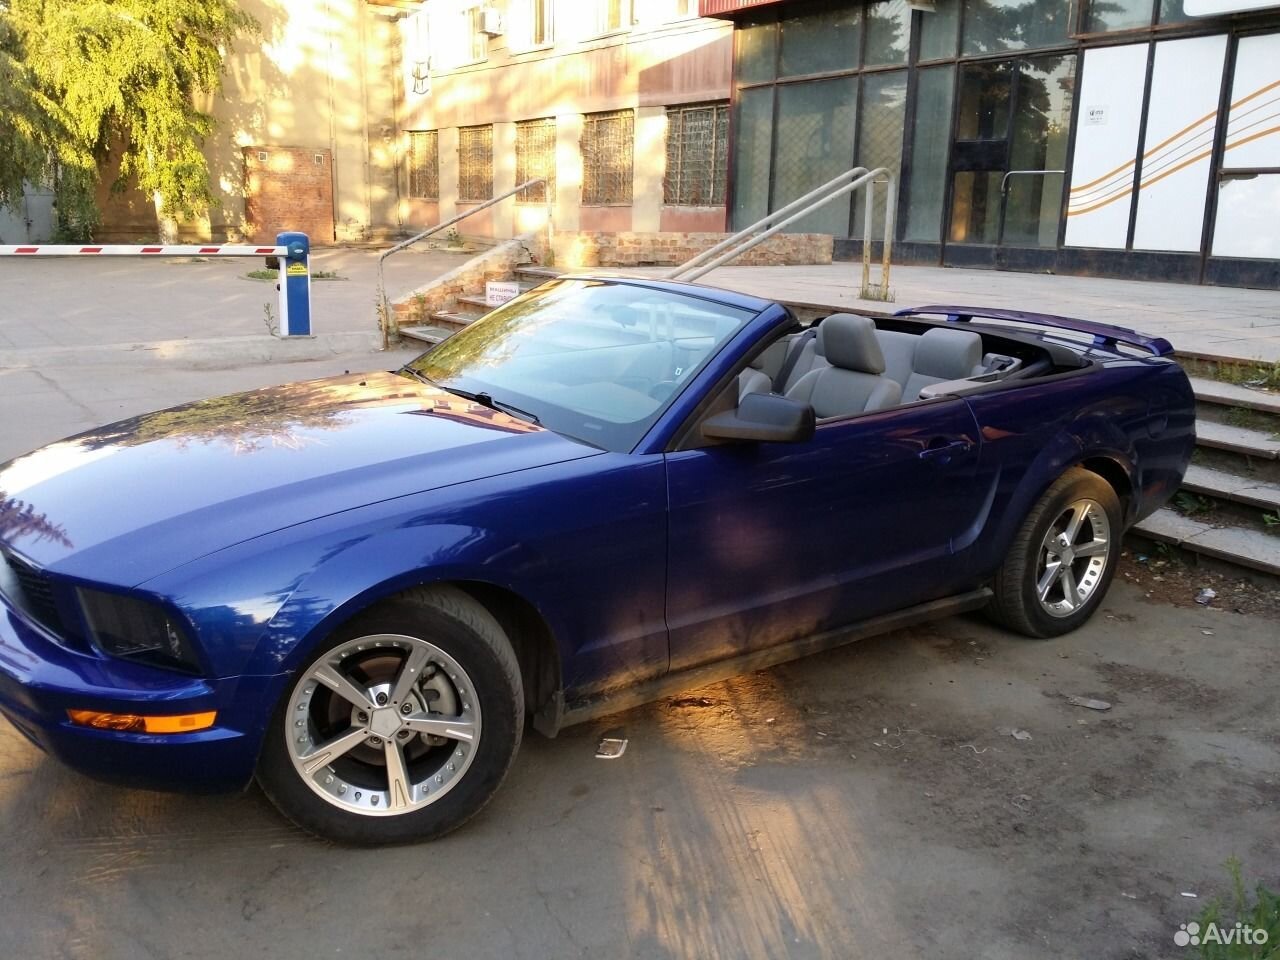 Куплю авто б у саратов. Ford Mustang 4.0 at голубой. Форд Мустанг Саратов. Форд Мустанг кабриолет 2005 года. Дорогие машины в Саратове.